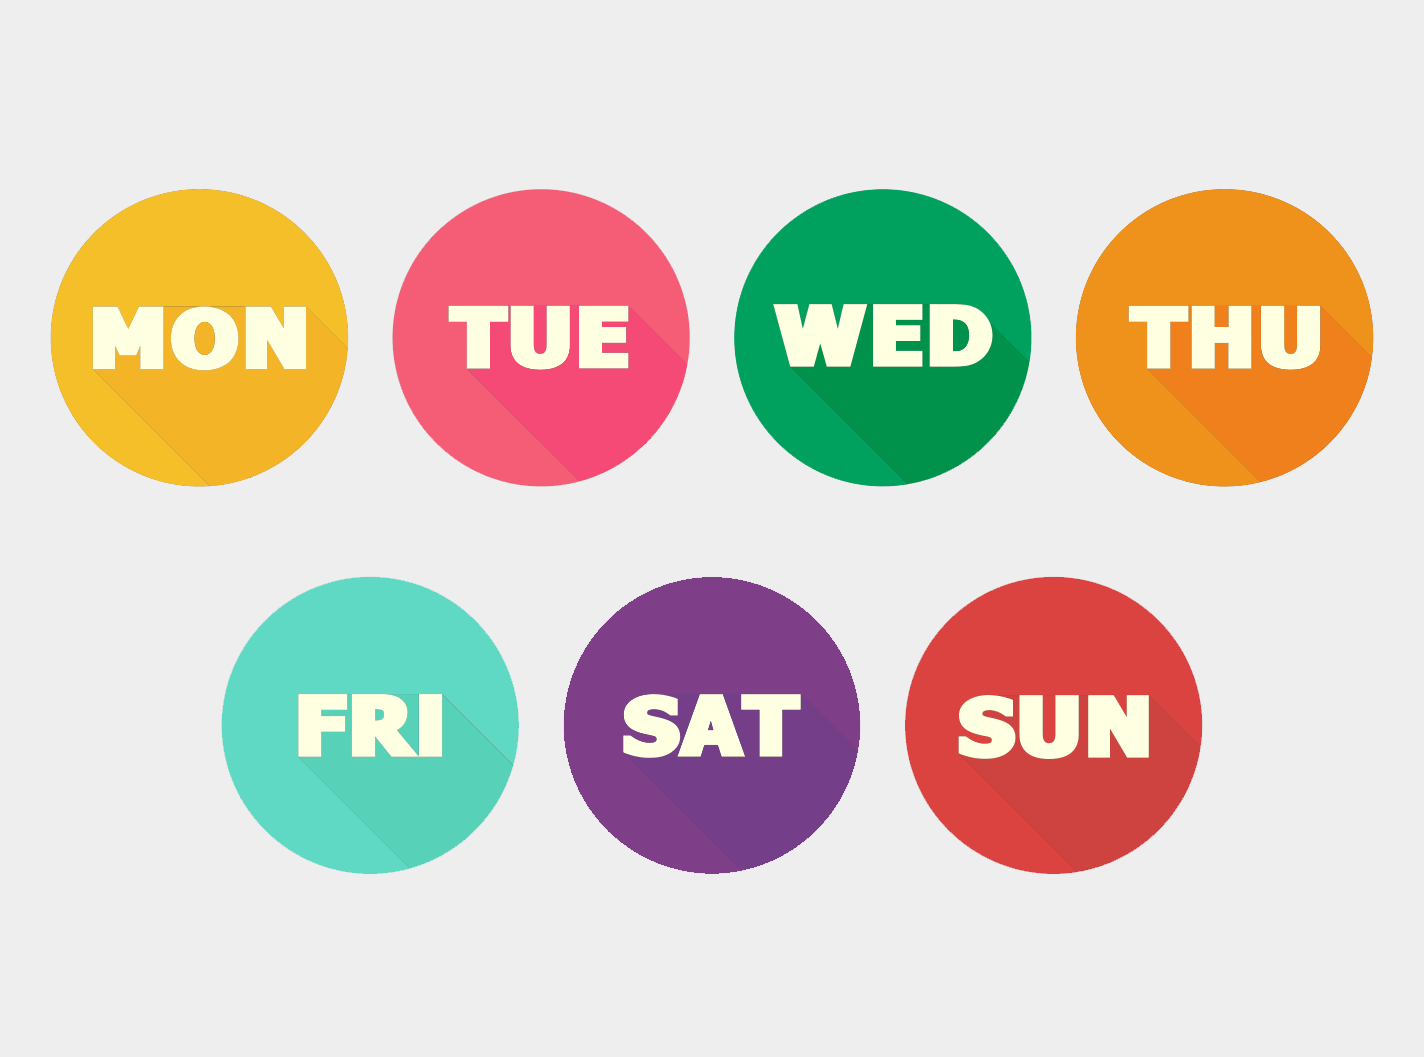 Días de la semana en hindi